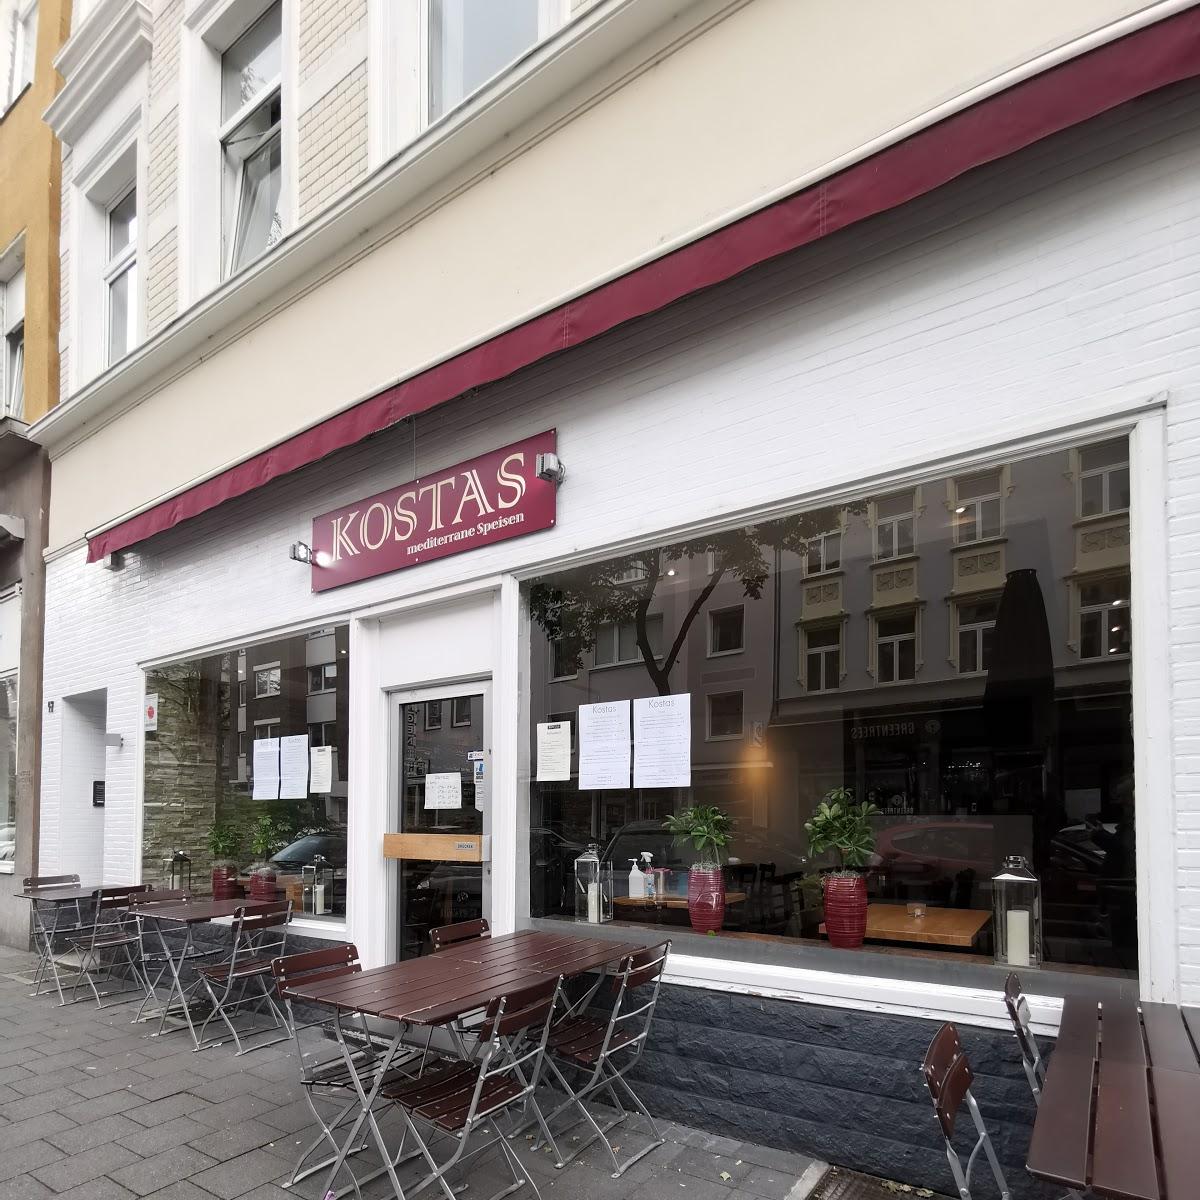 Restaurant "Griechisches Restaurant Düsseldorf - Kostas Taverne" in Düsseldorf